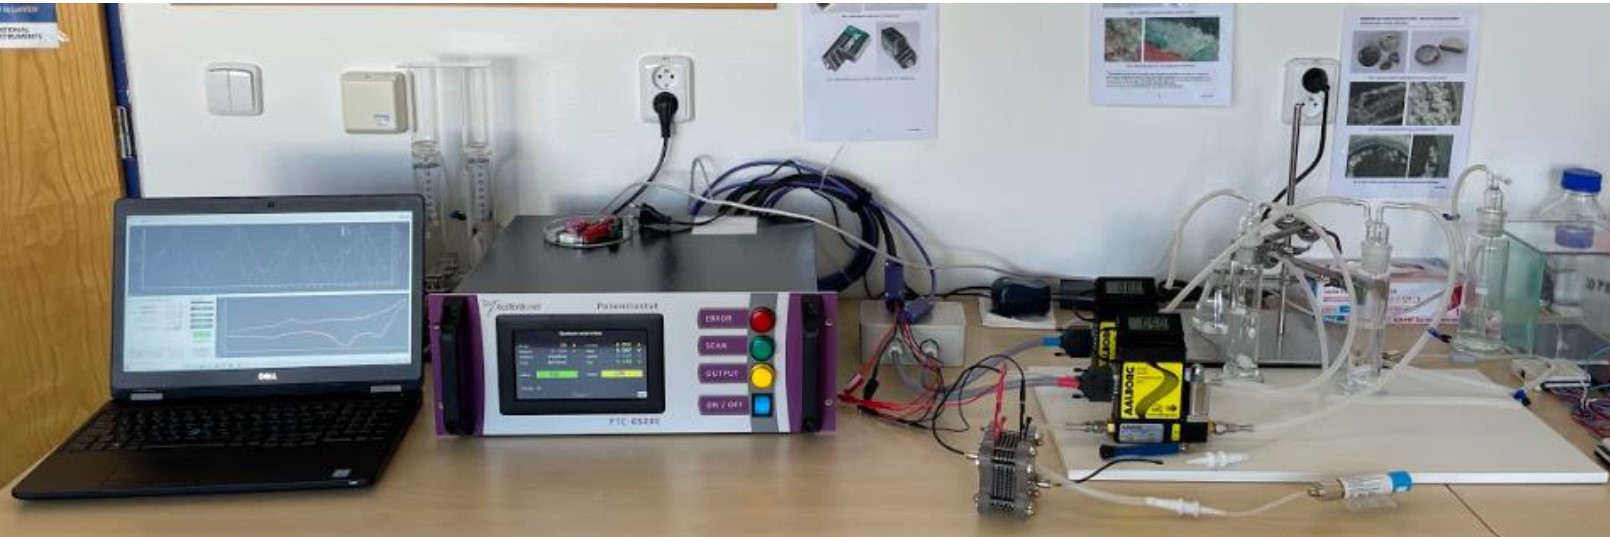 西波西米亚大学自建简易版实验室燃料电池测试系统(图1)